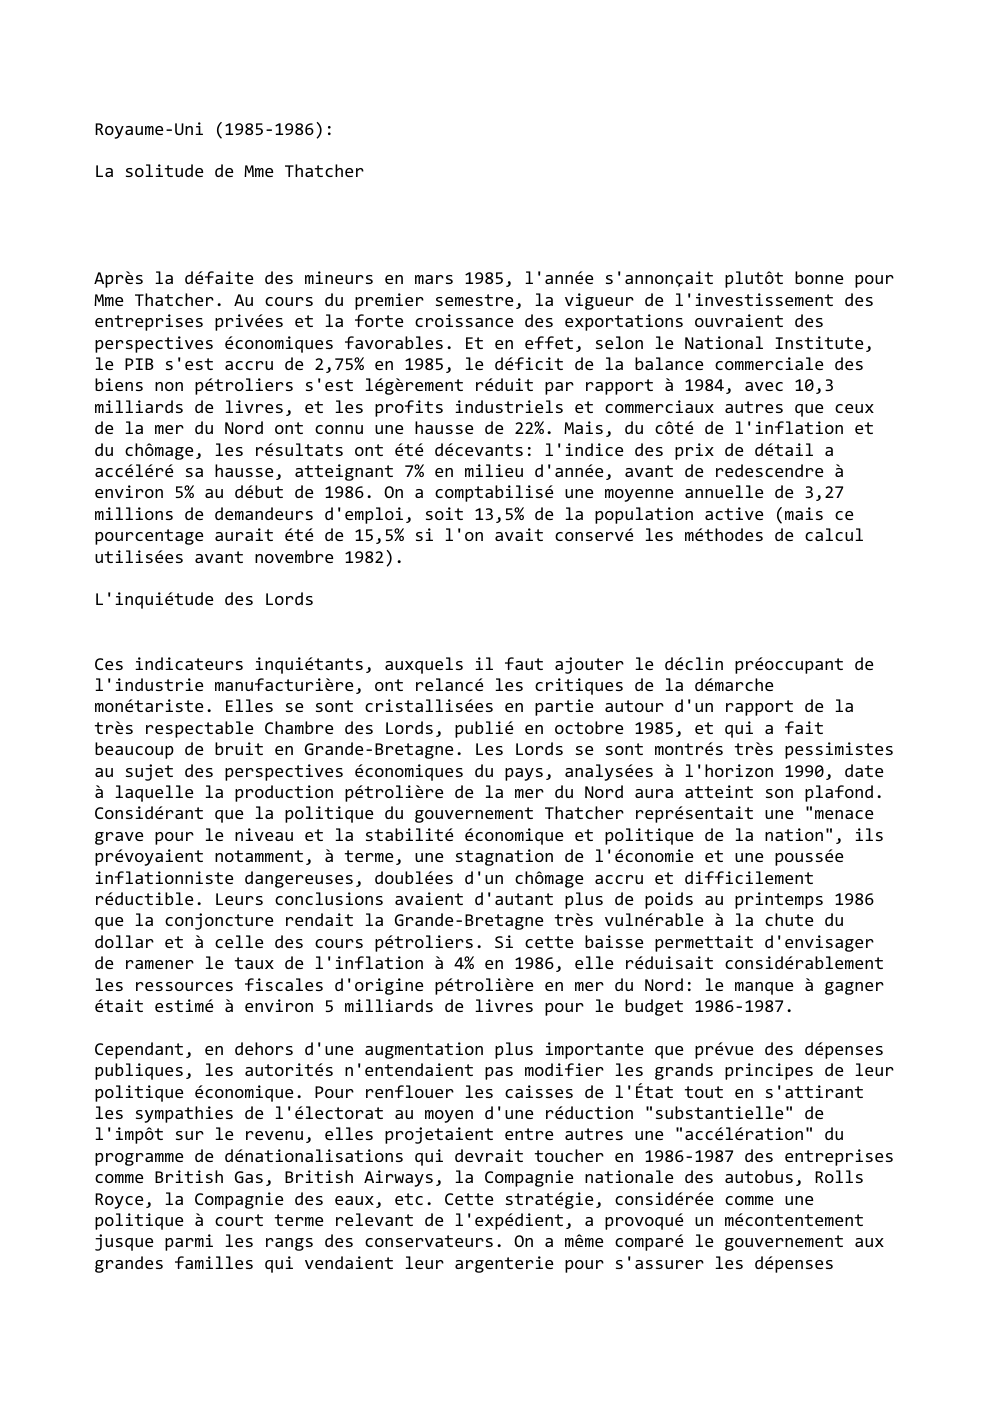 Prévisualisation du document Royaume-Uni (1985-1986):
La solitude de Mme Thatcher

Après la défaite des mineurs en mars 1985, l'année s'annonçait plutôt bonne pour...